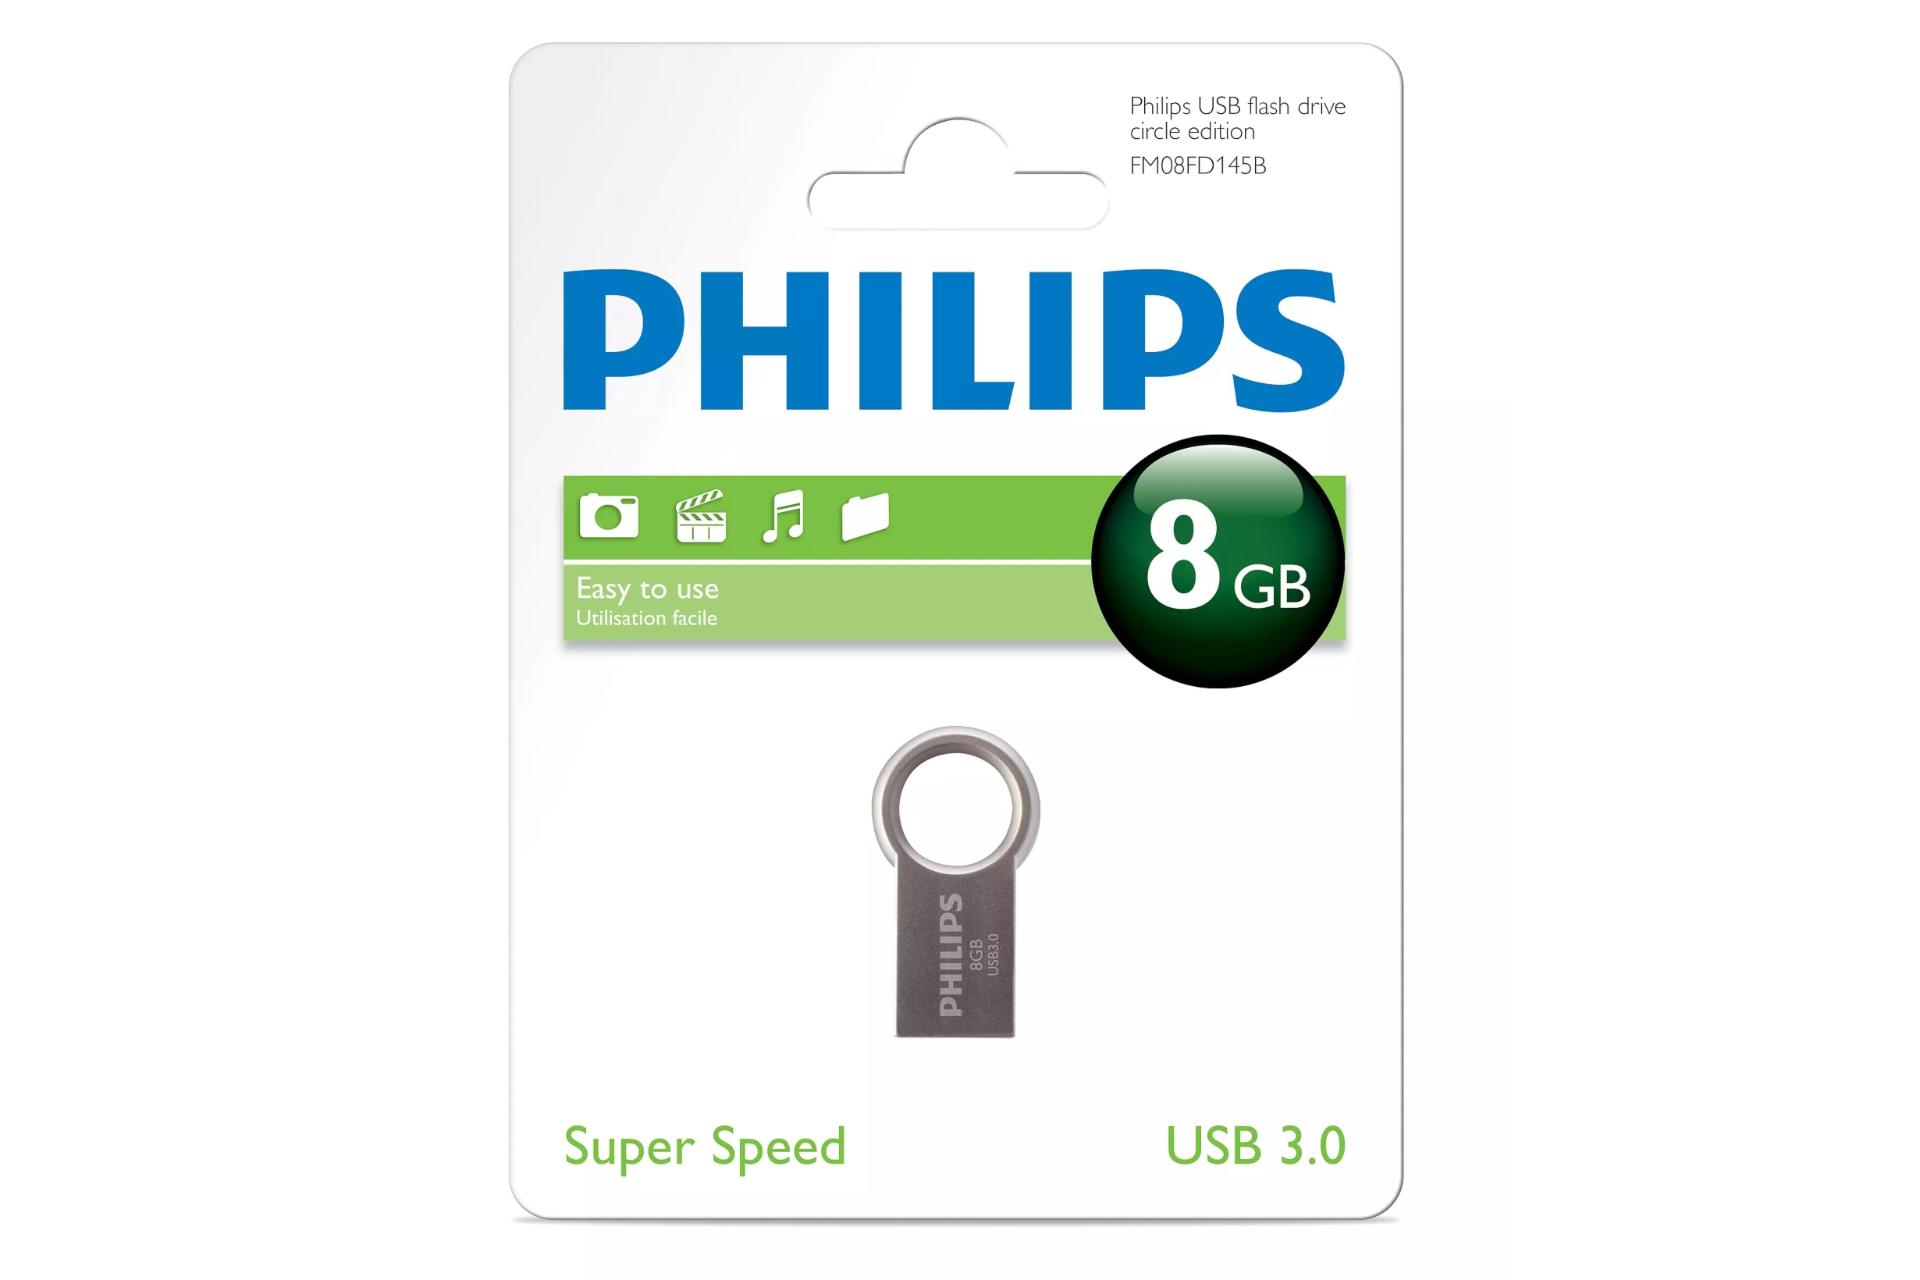 جعبه Philips Circle 8GB / فلش مموری فیلیپس مدل Circle ظرفیت 8 گیگابایت